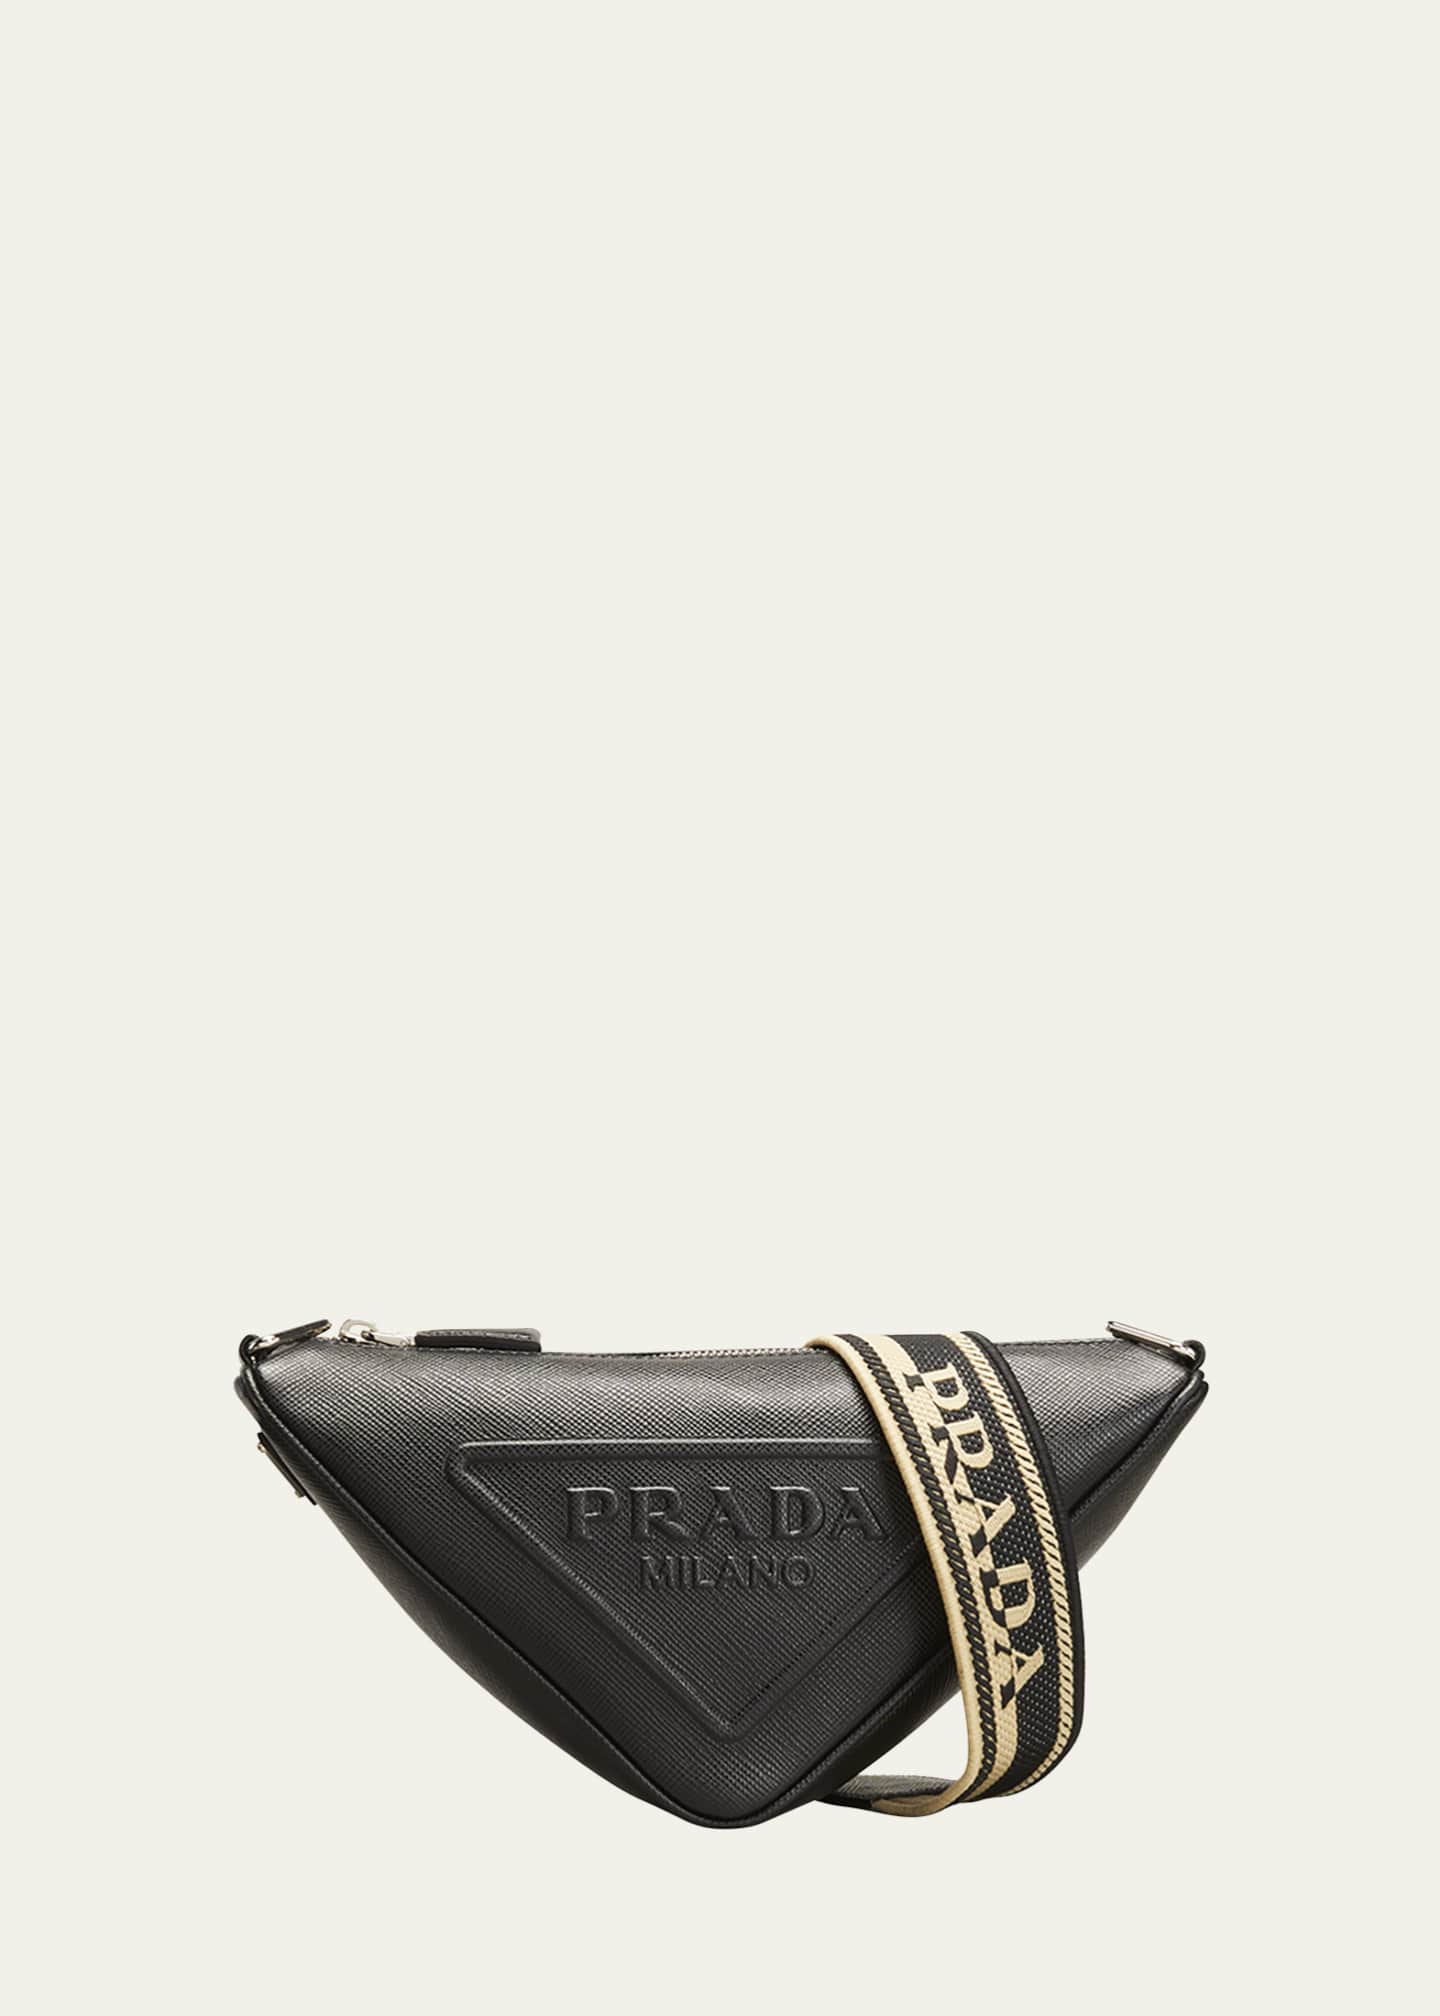 Prada Men's Saffiano Leather Logo Triangle Crossbody Bag - Bergdorf Goodman